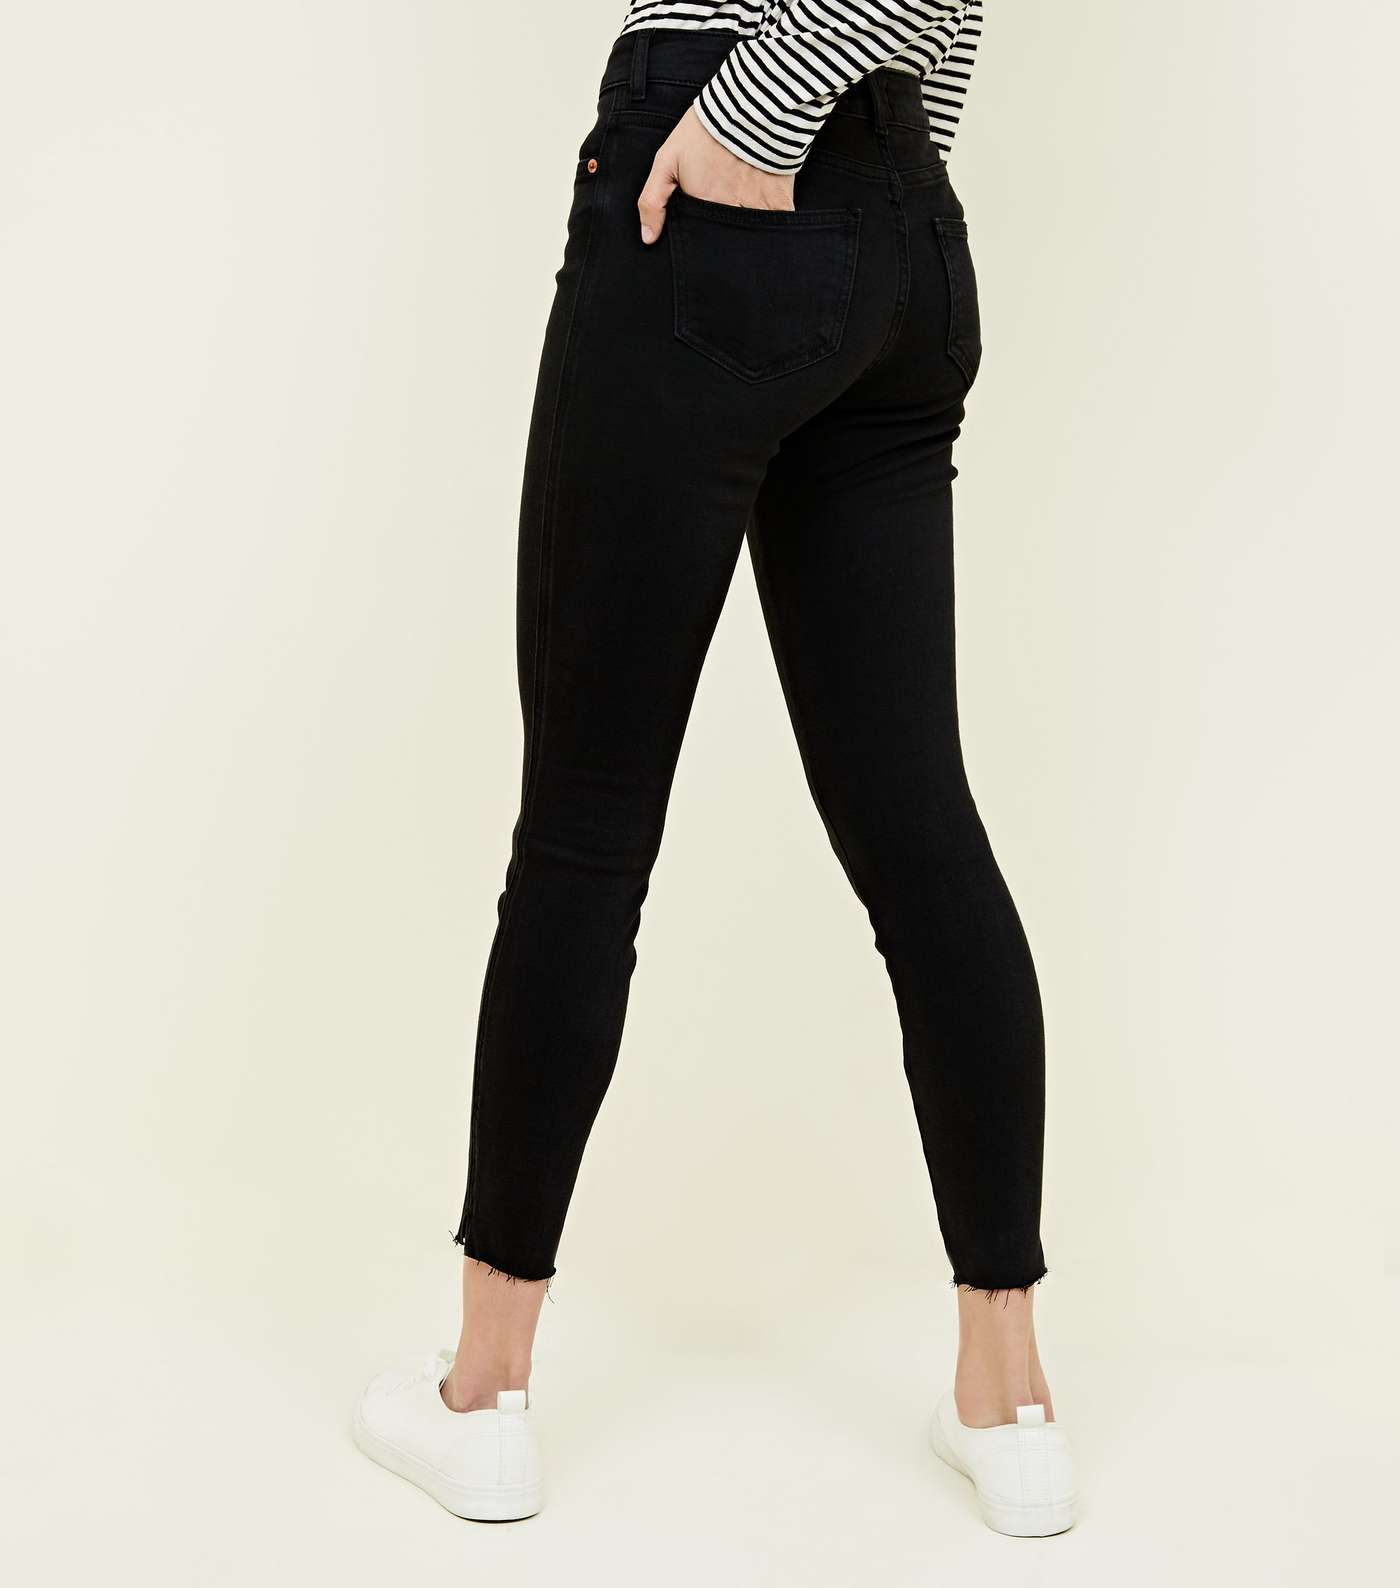 Black Frayed Hem Skinny Jenna Jeans Image 3